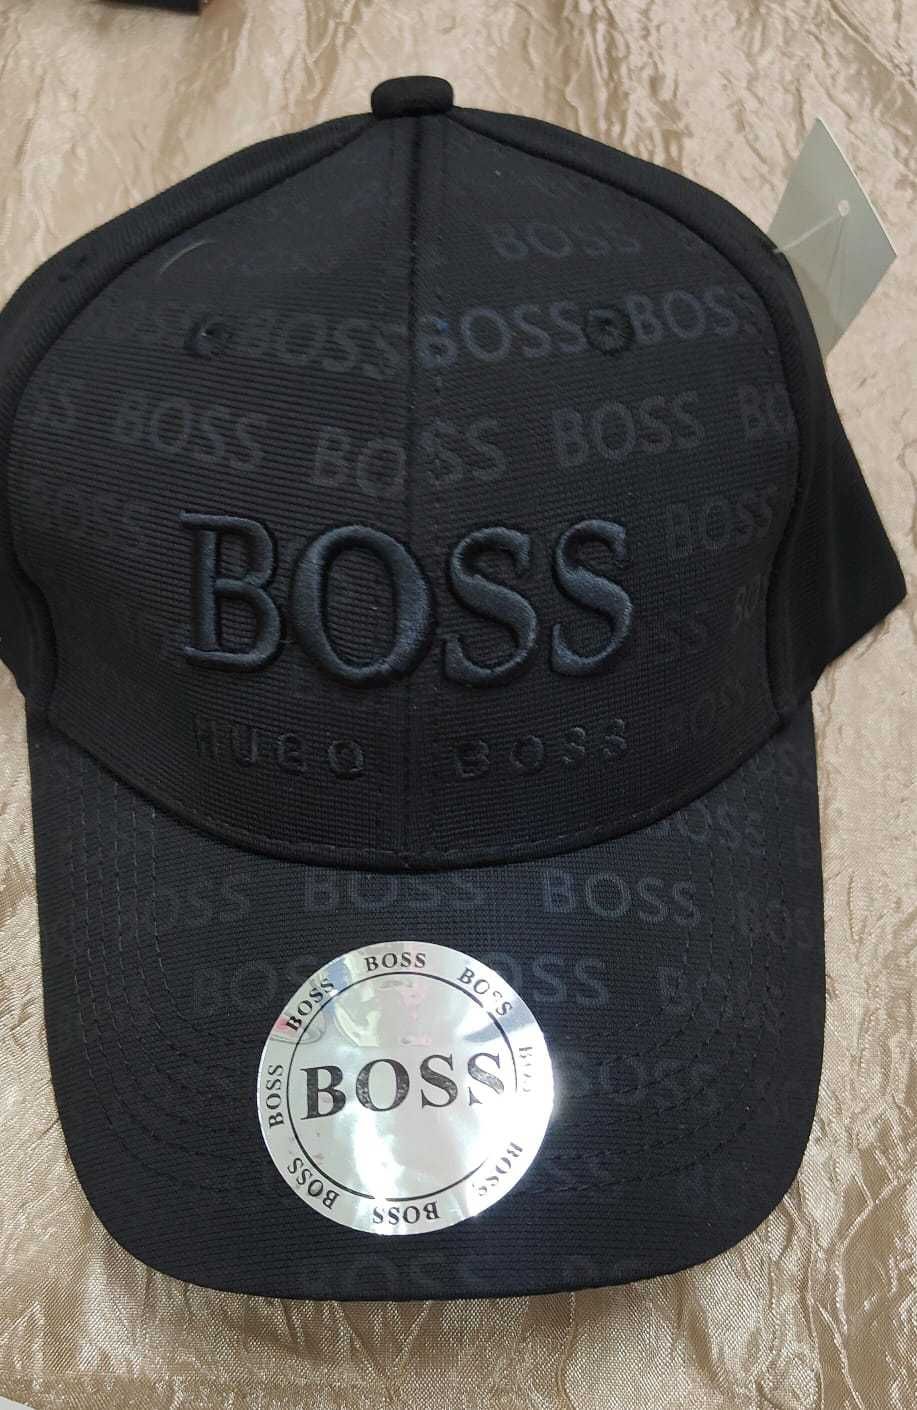 bones boss novos